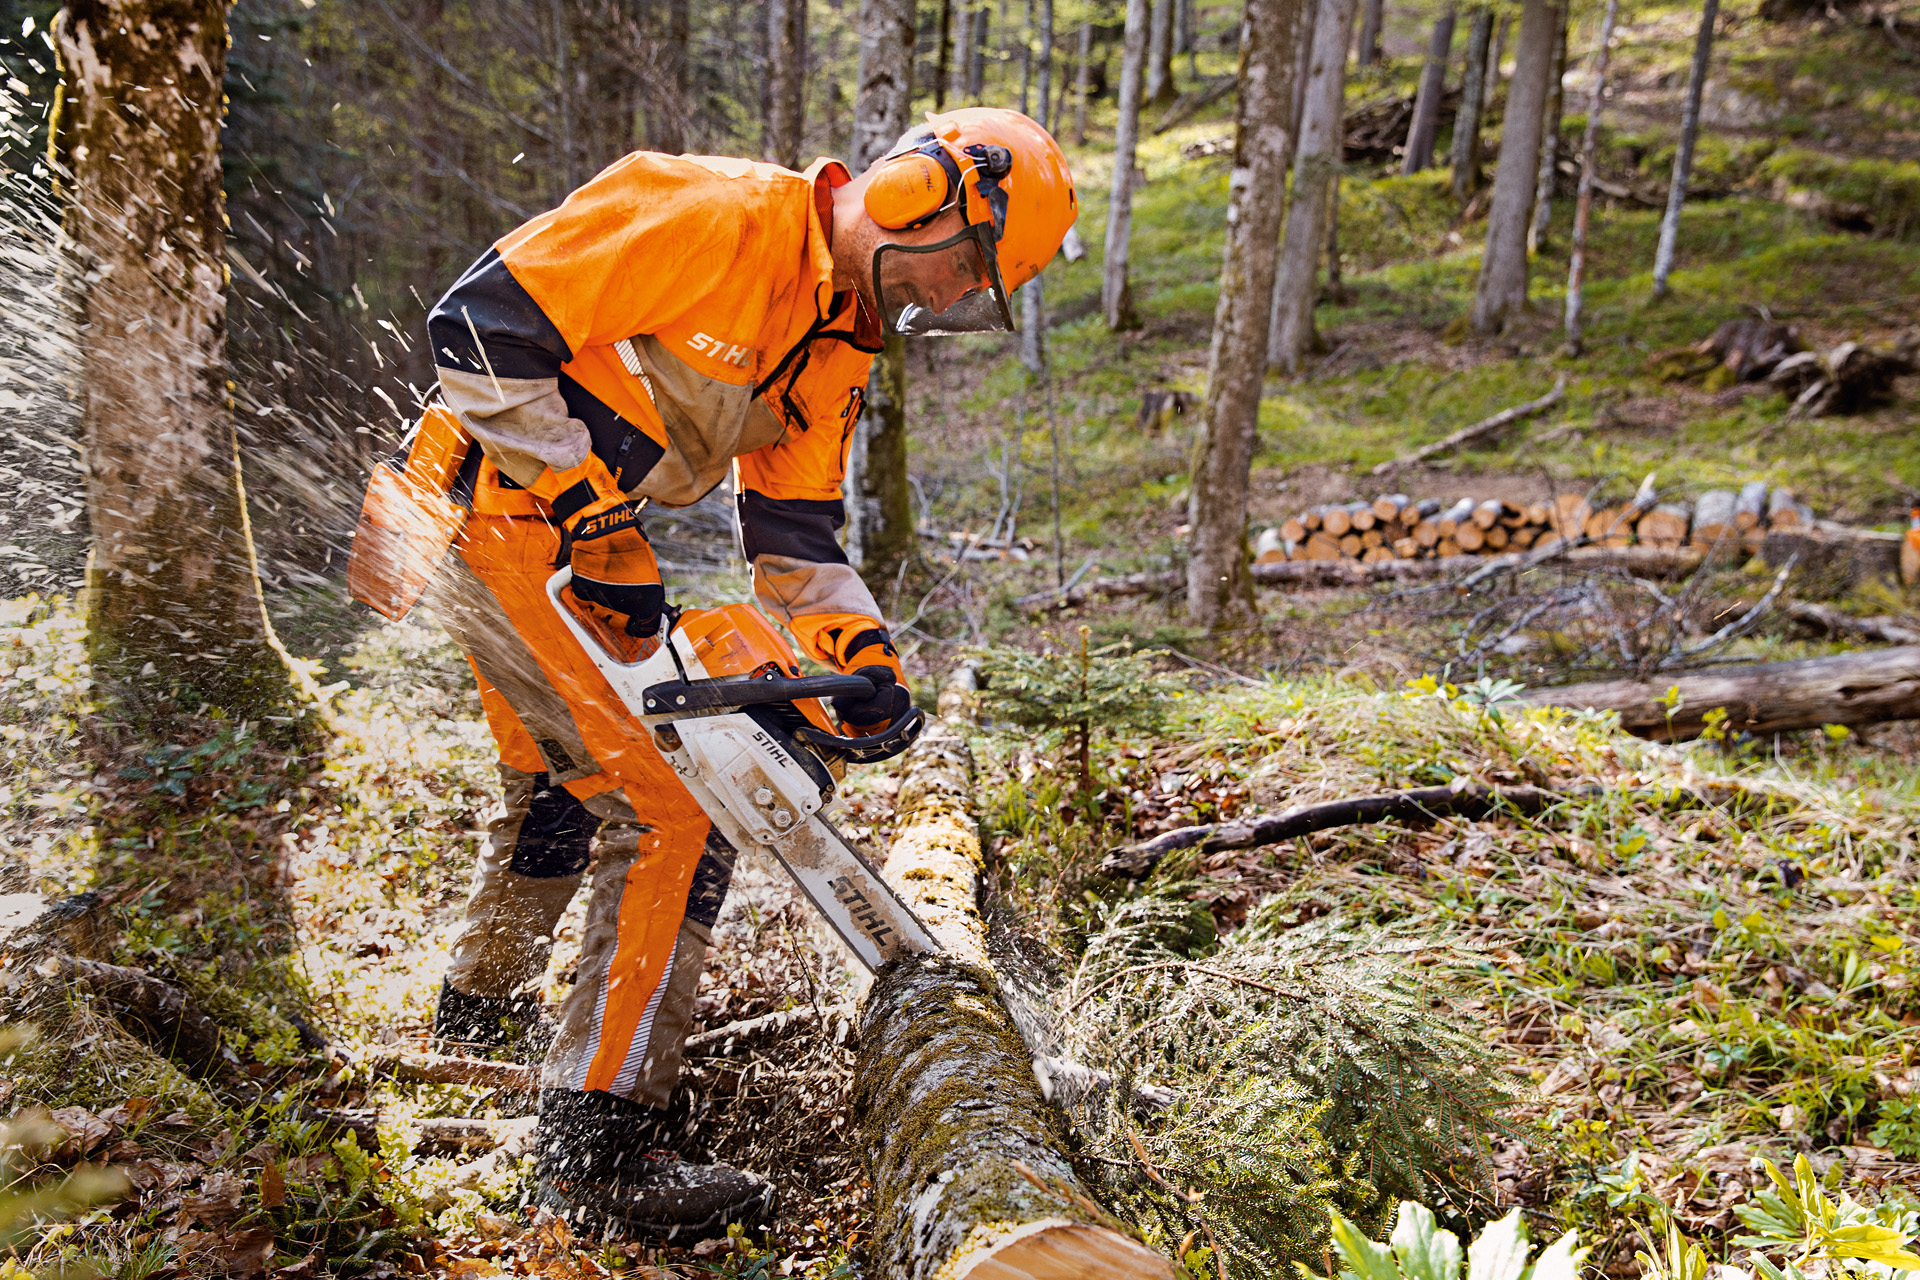 Waldarbeiter in STIHL Schutzkleidung samt Dynamic Vent Hose (Schnittschutzklasse 1) sägt Baum im Wald mit STIHL Motorsäge